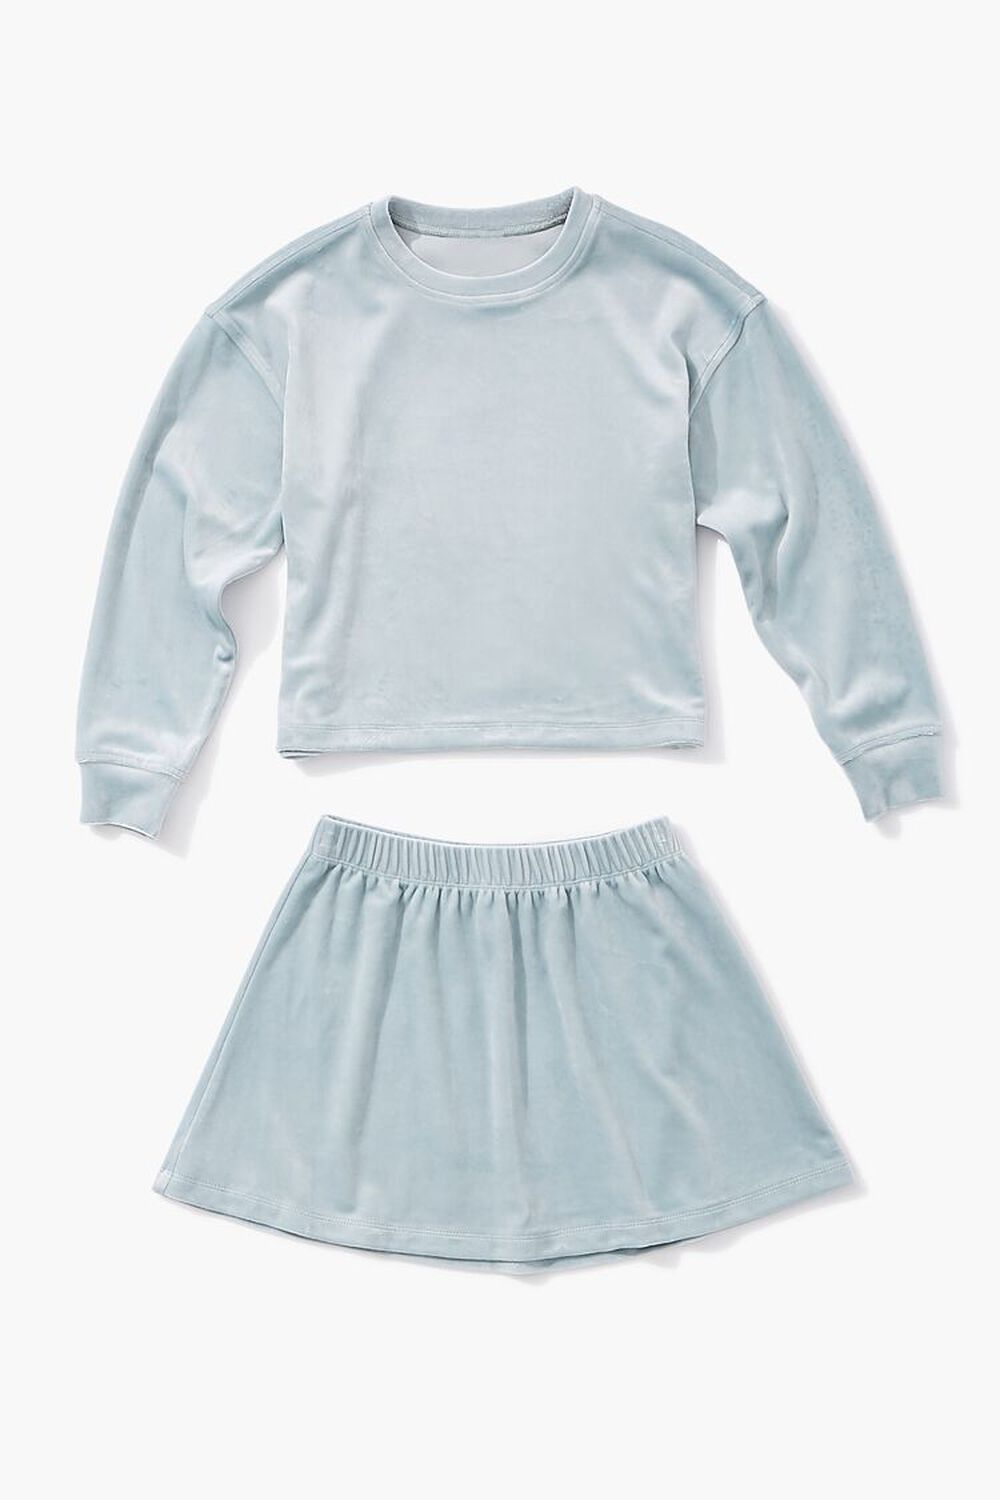 BLUE Girls Velvet Tee & Skirt Set (Kids), image 1